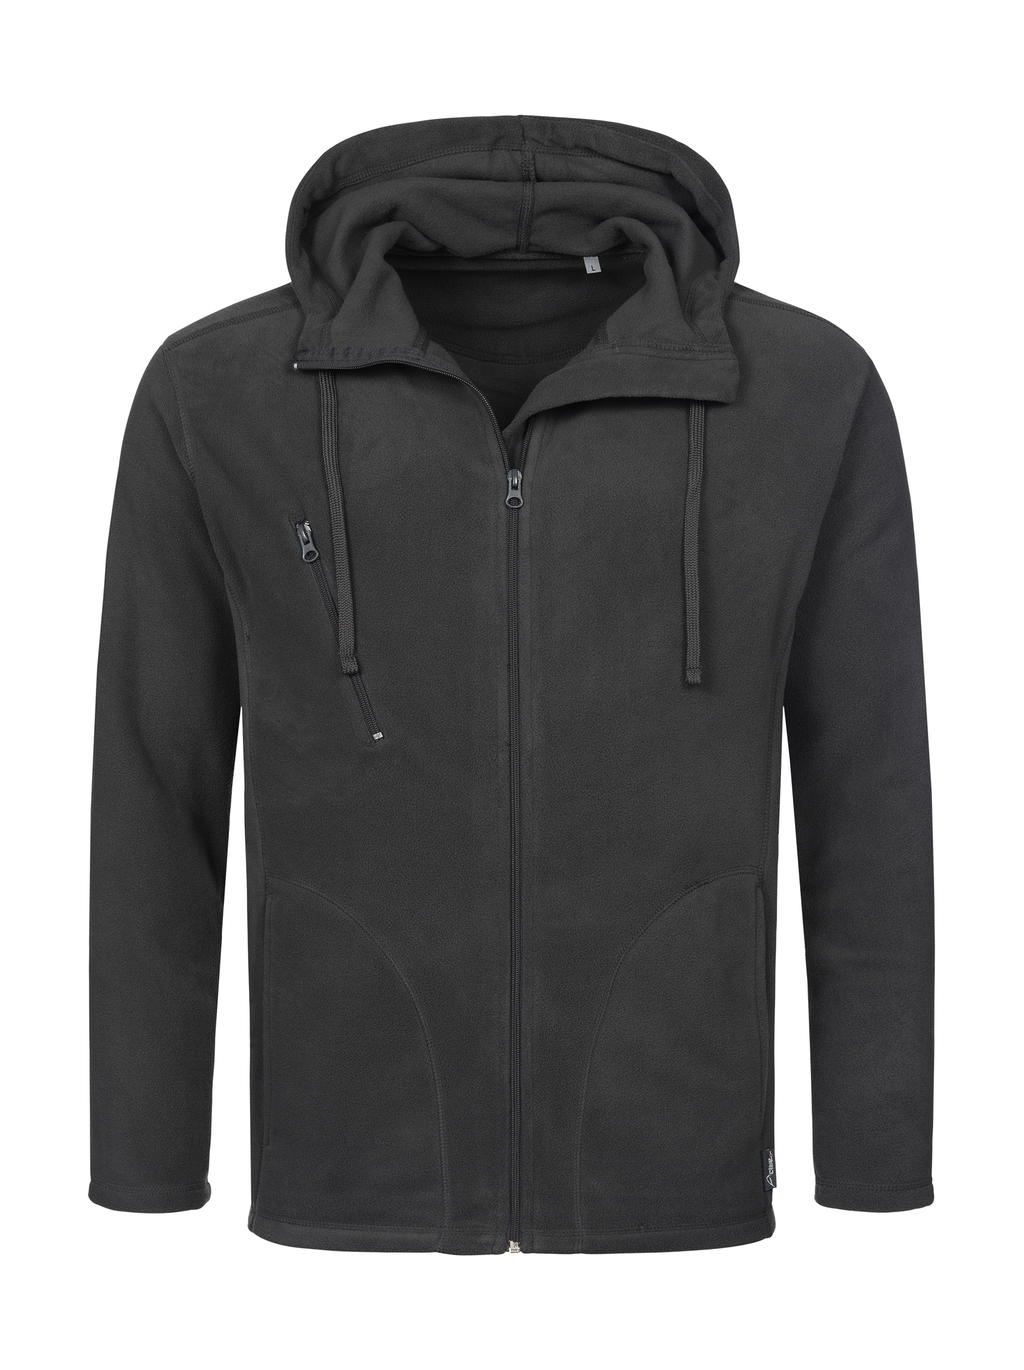  Hooded Fleece Jacket in Farbe Grey Steel